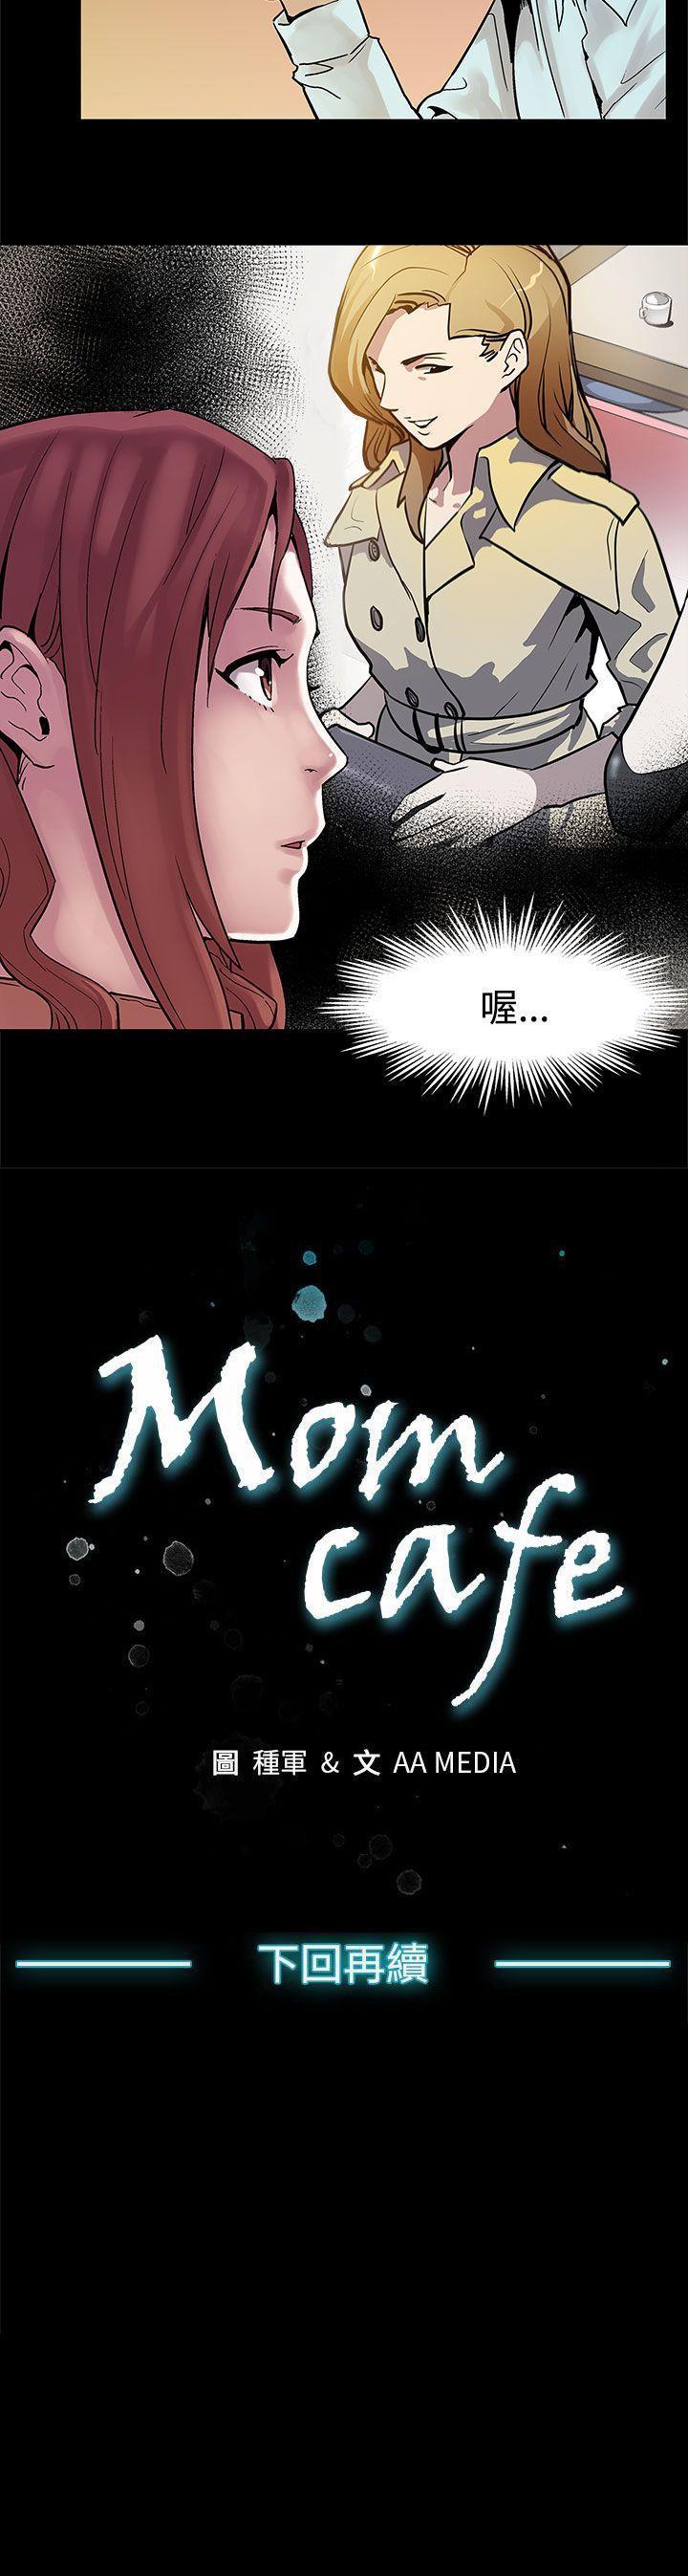 Mom cafe 1-72 119